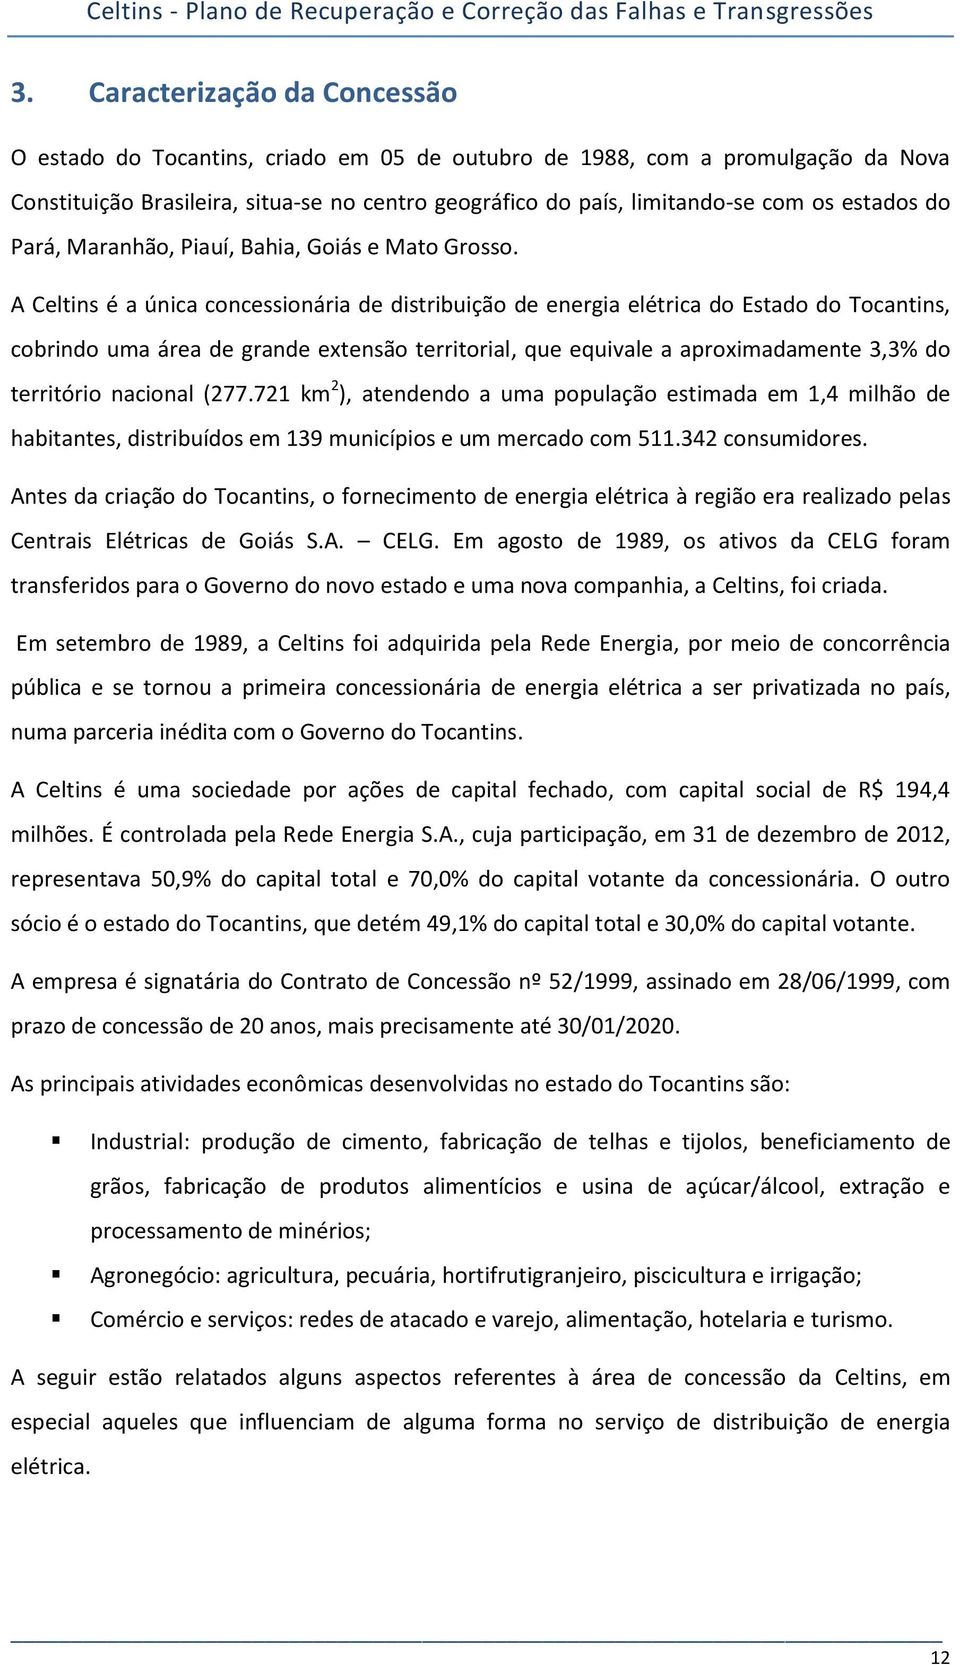 A Celtins é a única concessionária de distribuição de energia elétrica do Estado do Tocantins, cobrindo uma área de grande extensão territorial, que equivale a aproximadamente 3,3% do território